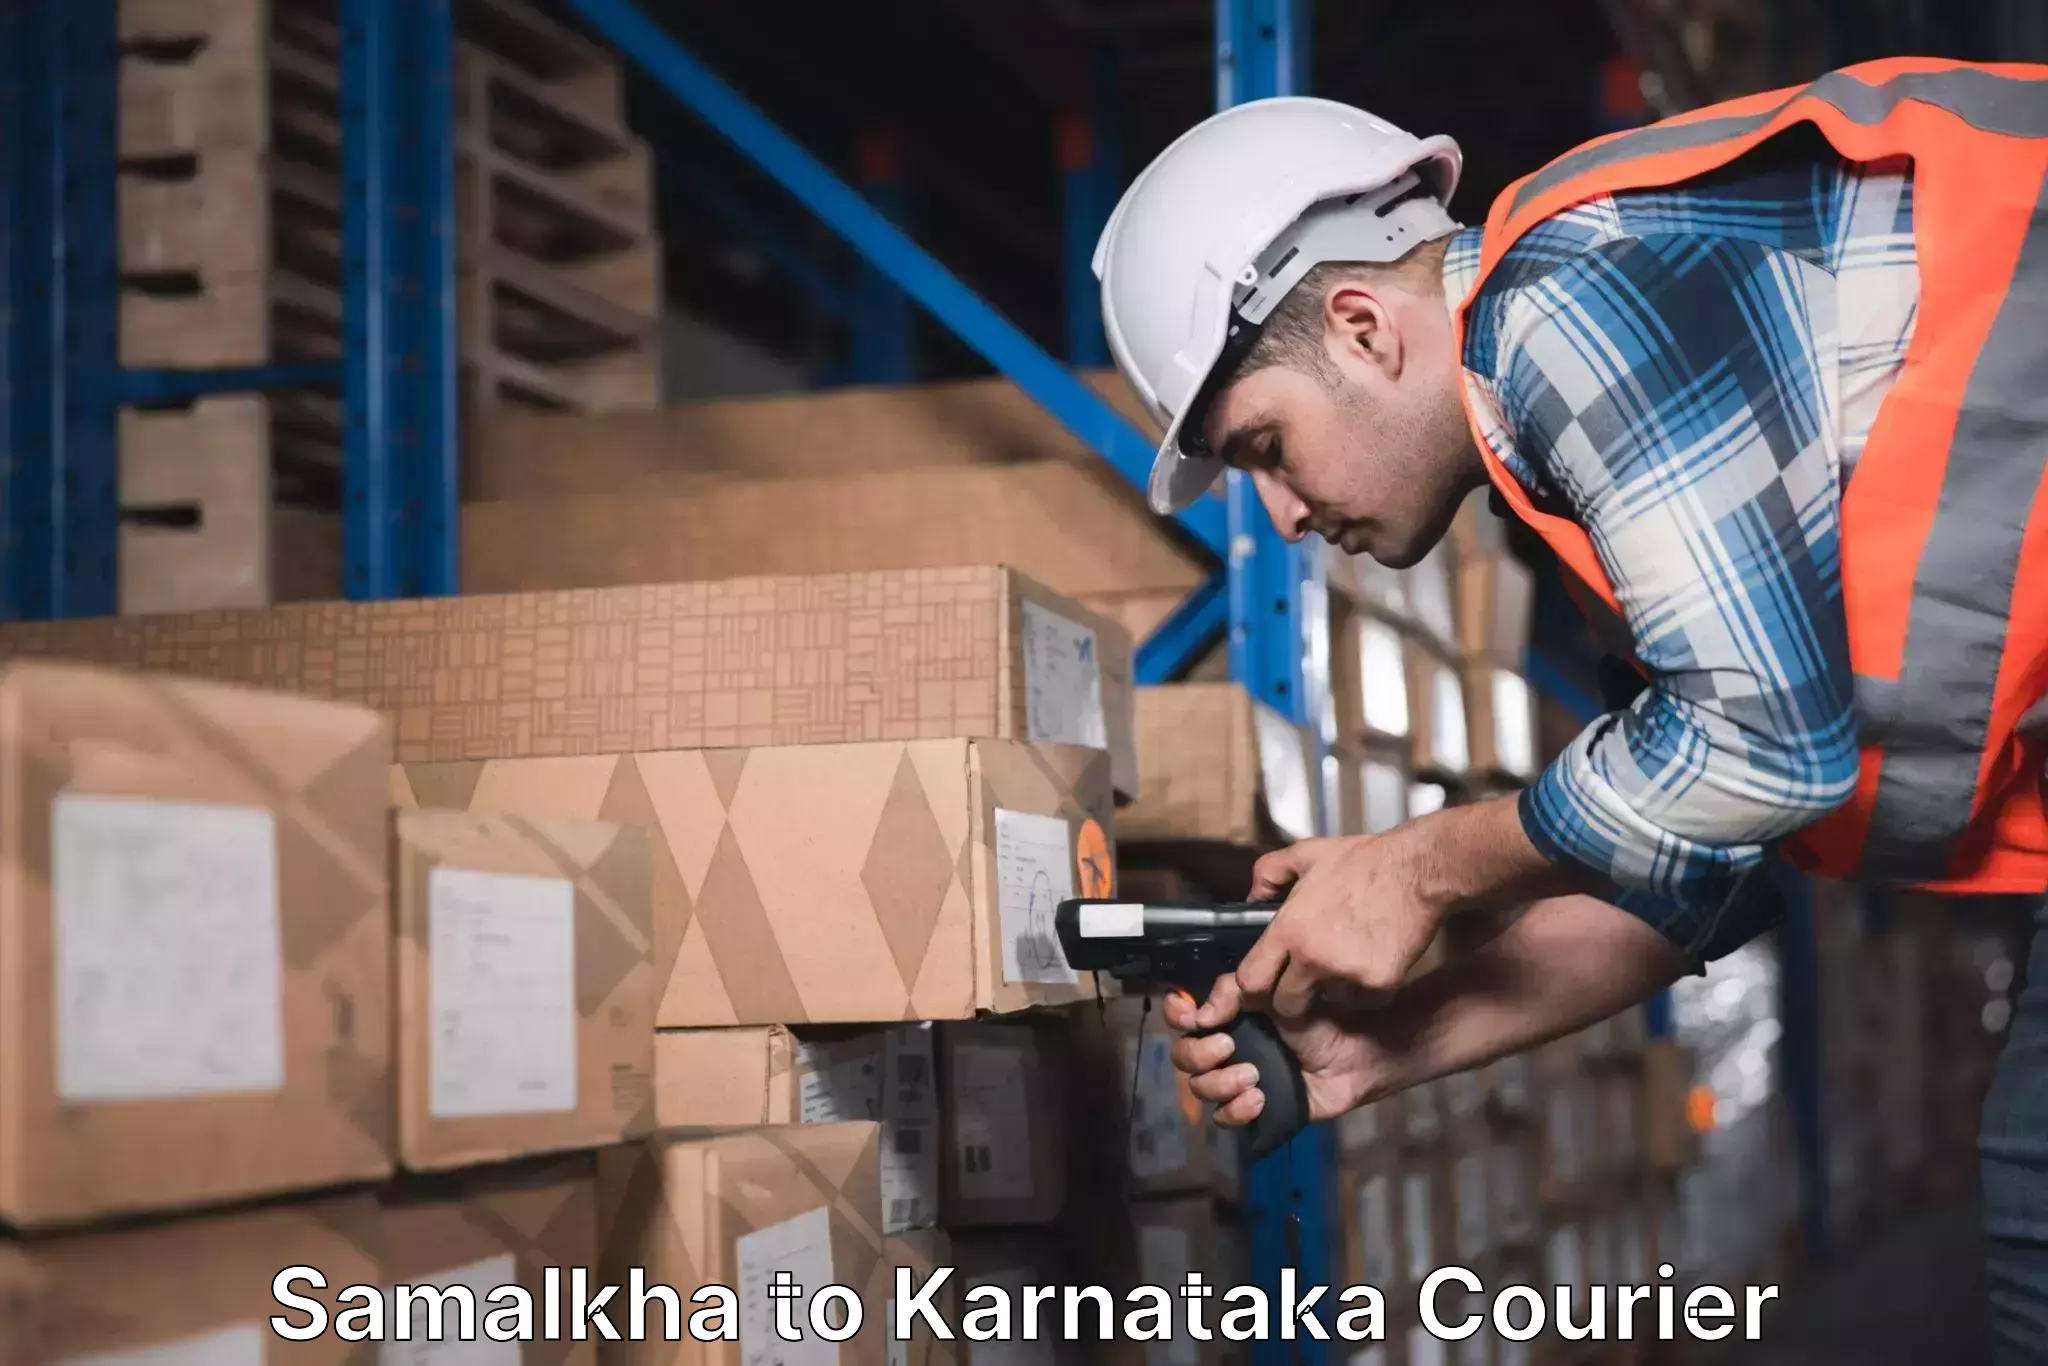 Express delivery capabilities in Samalkha to Karnataka